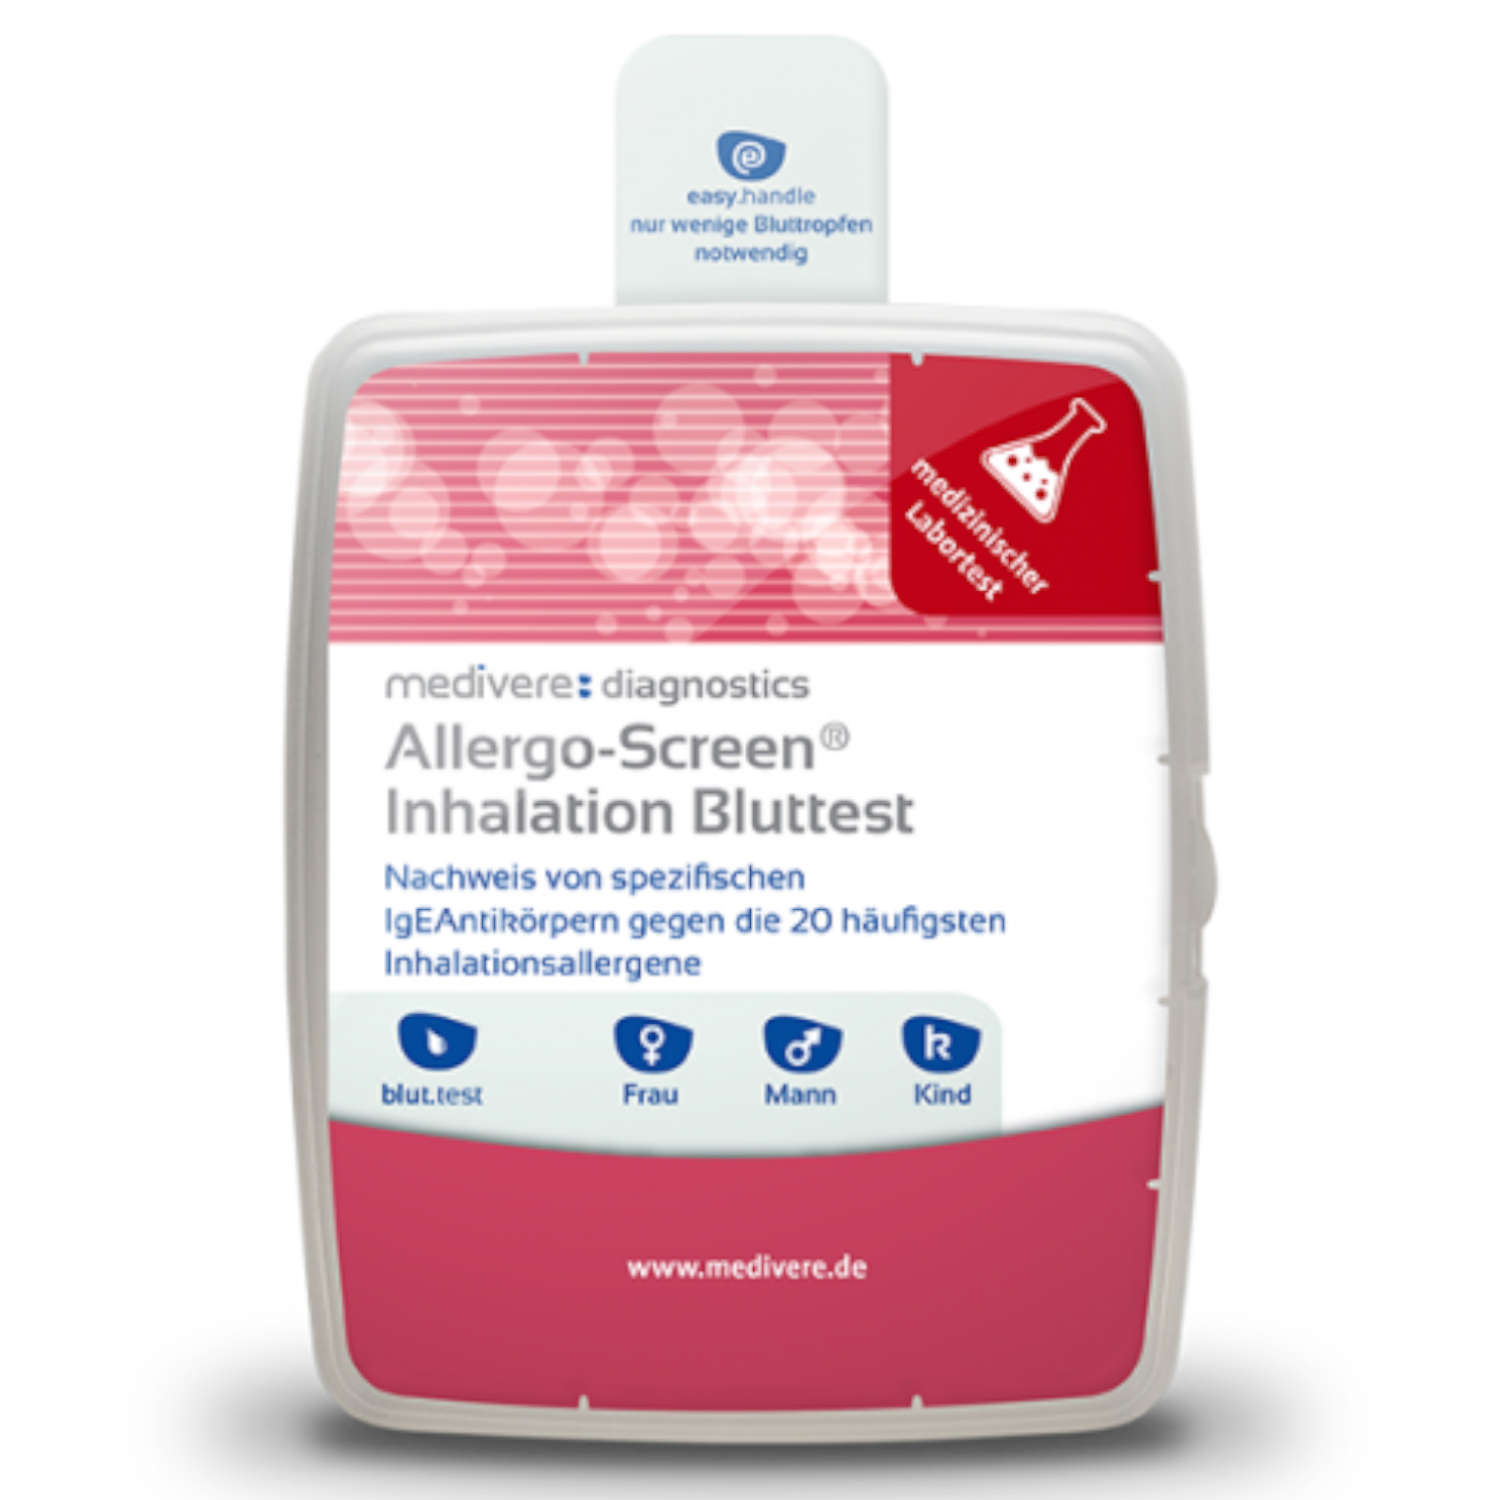 Allergo-Screen® Inhalation Bluttest